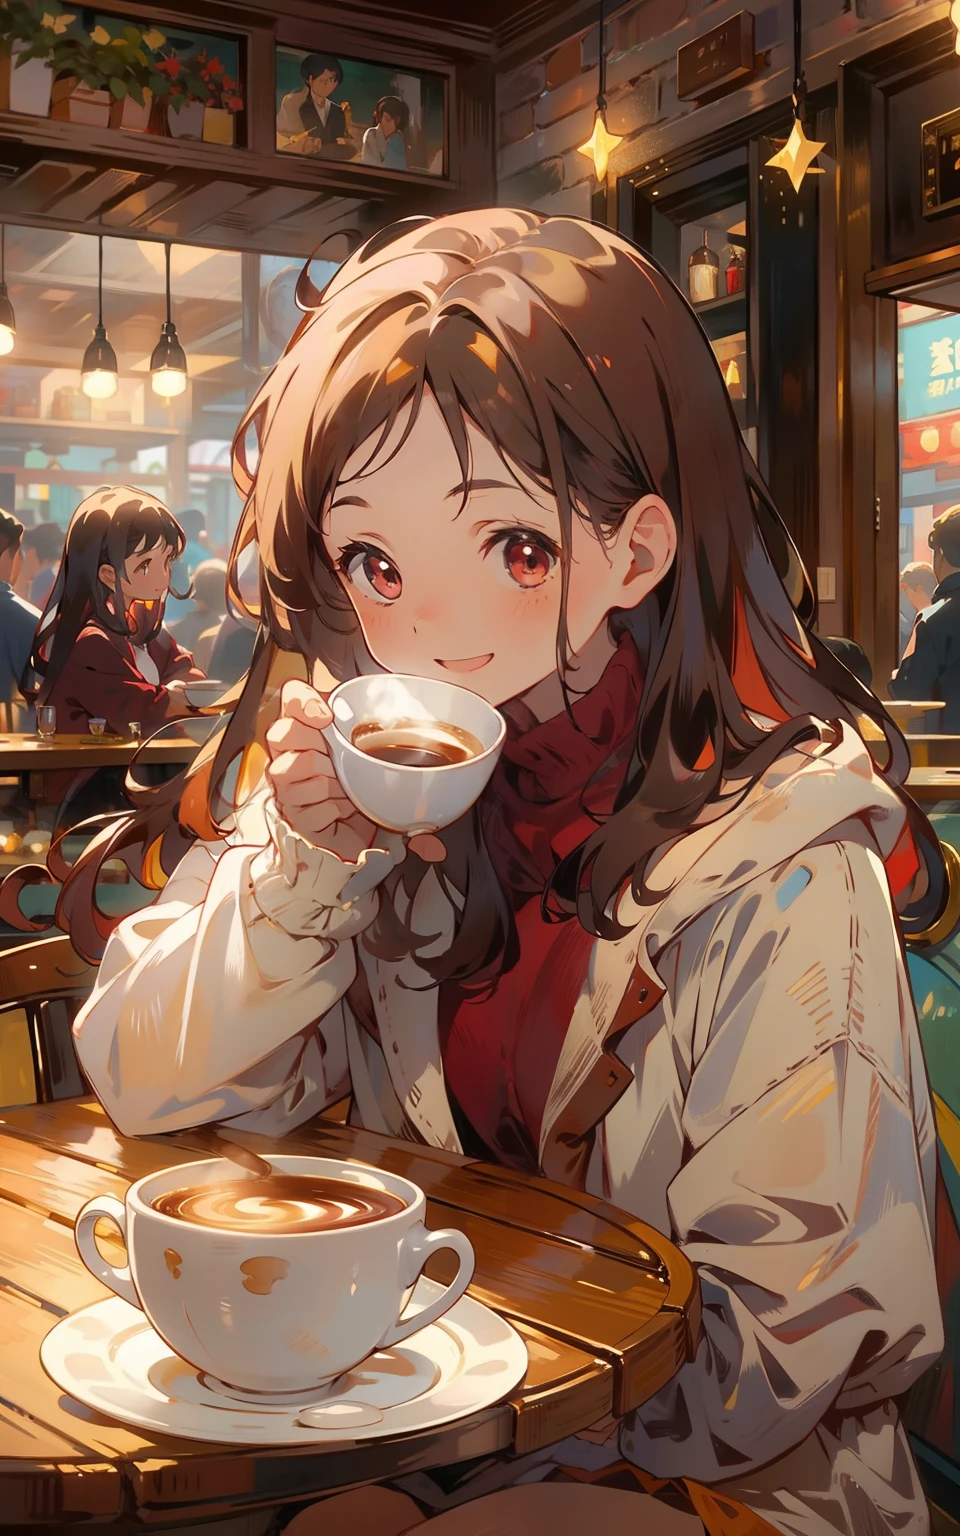 5. 栗子咖啡時間：一個年輕女孩坐在栗色咖啡館裡，她穿著一件毛衣，手裡拿著滾燙的琵琶，微笑享受咖啡的香氣和溫暖。